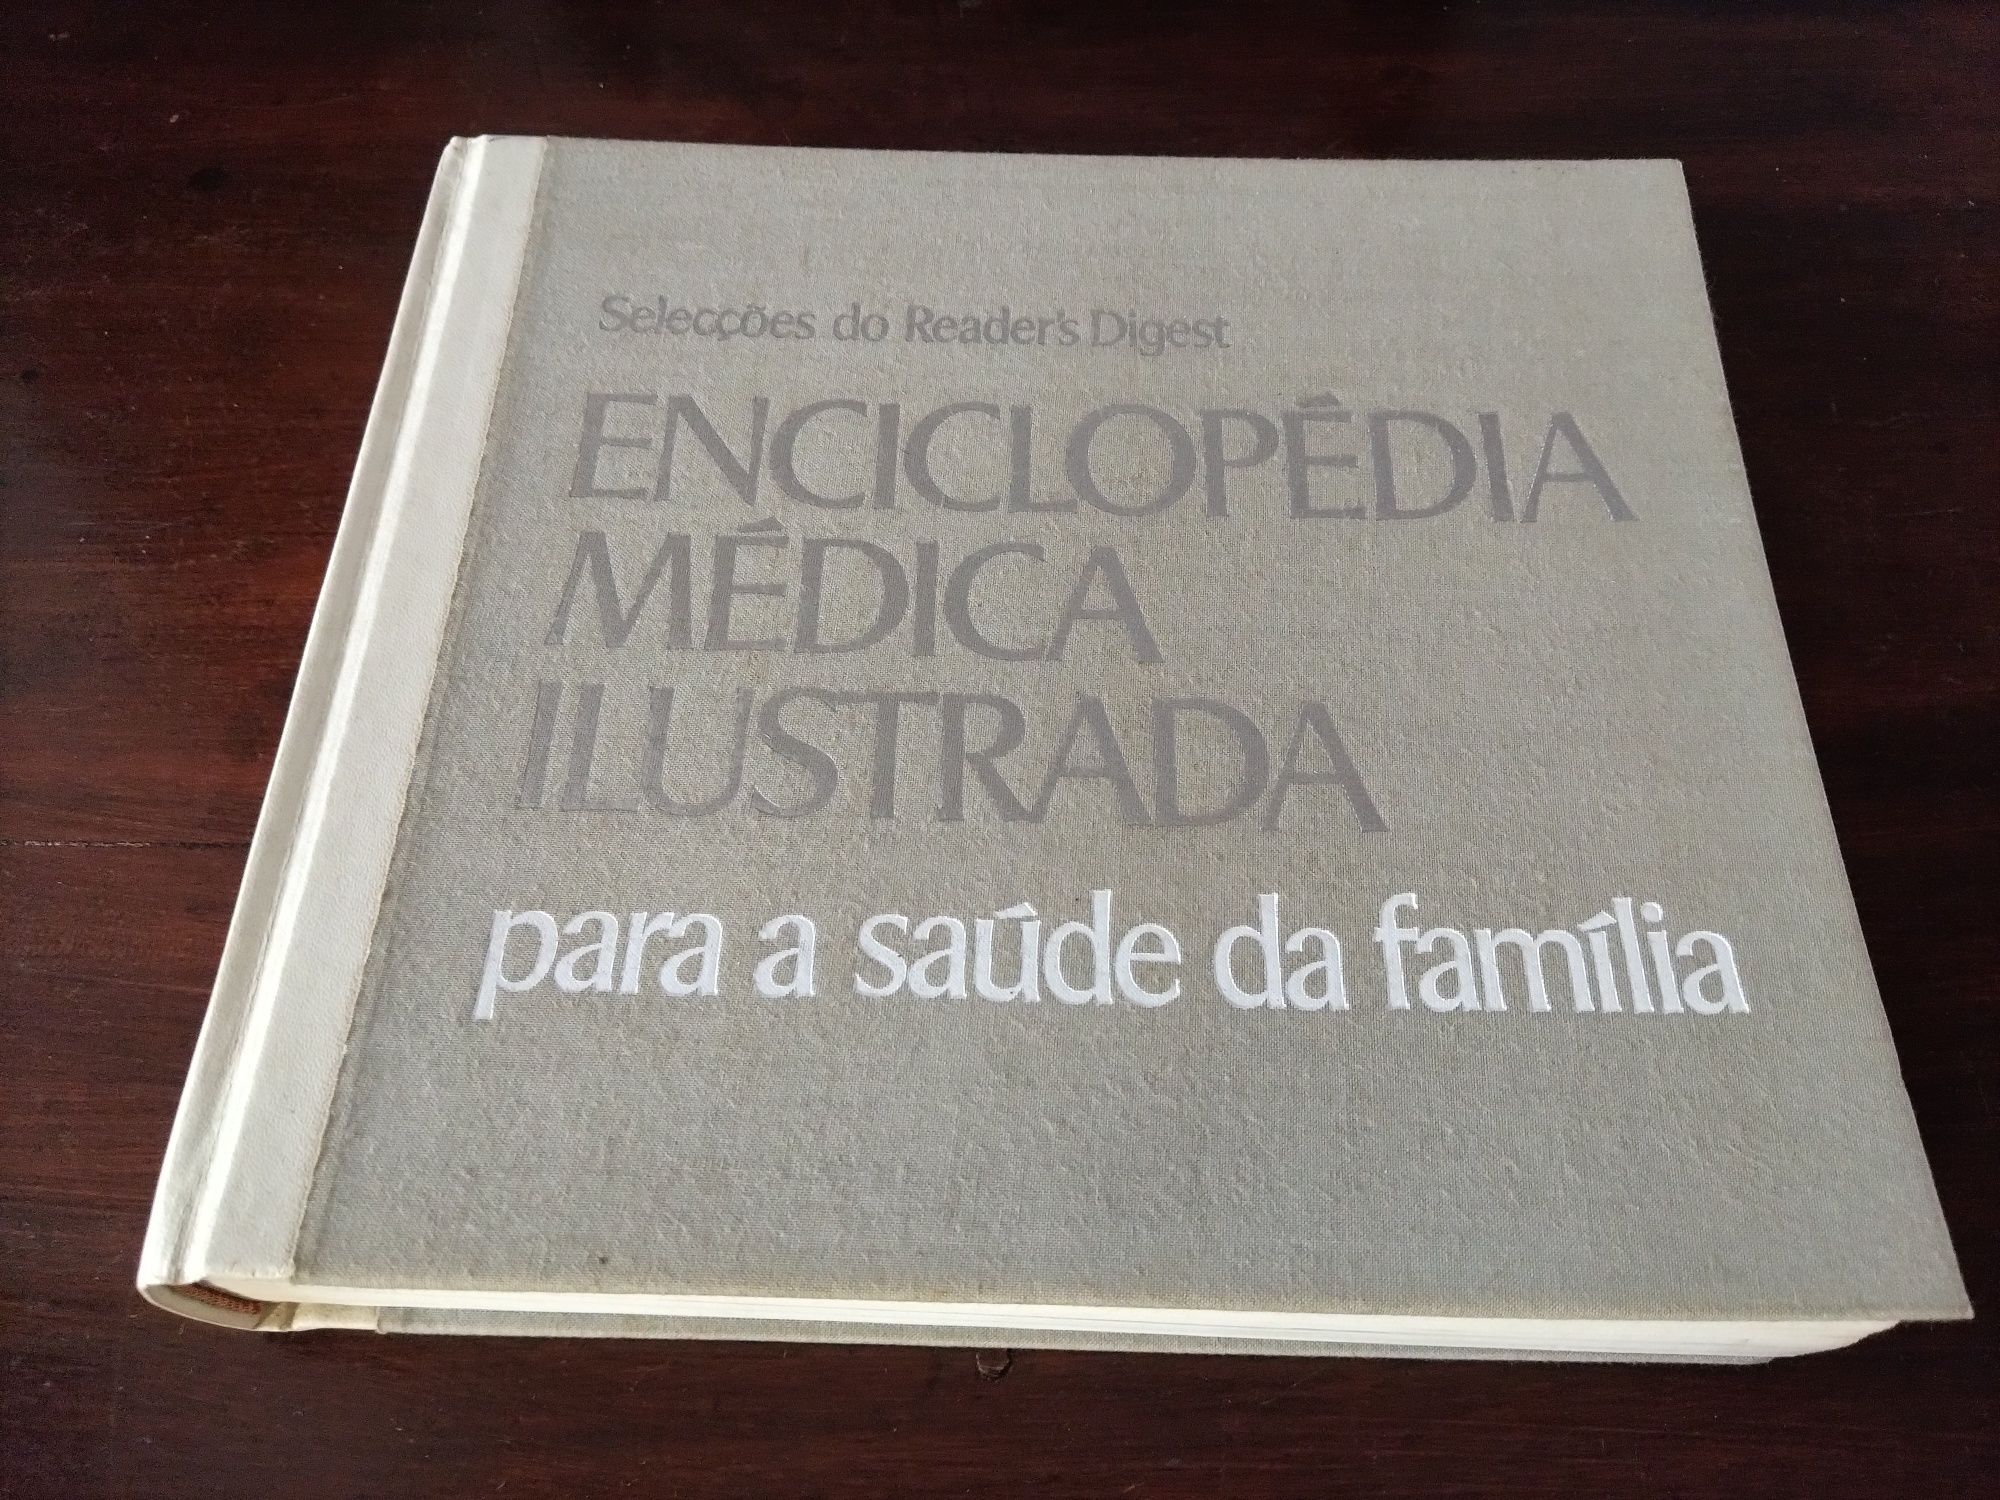 Enciclopédia Médica Ilustrada para a Saúde da Família